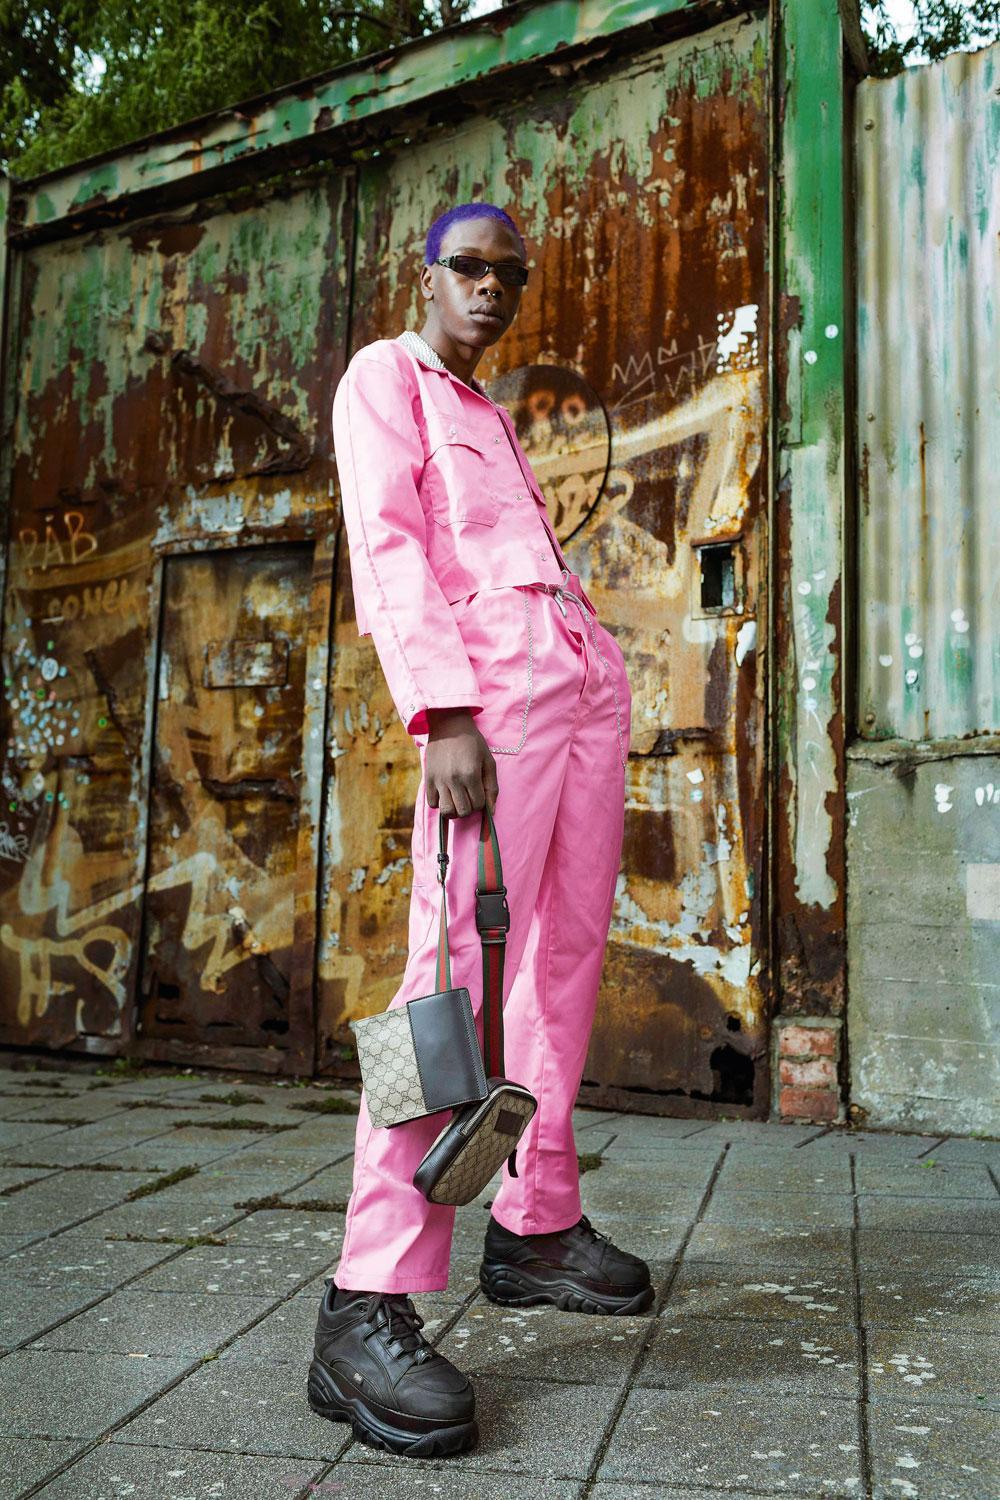 Dylan Kiala : Roze bonne suit (traditioneel werkmanspak) dat Dylan verknipt heeft, gekocht bij In 't Boerke in Antwerpen. Tweedehands Buffalo's. Gucci- tasje uit de Gucci-boetiek in Brussel